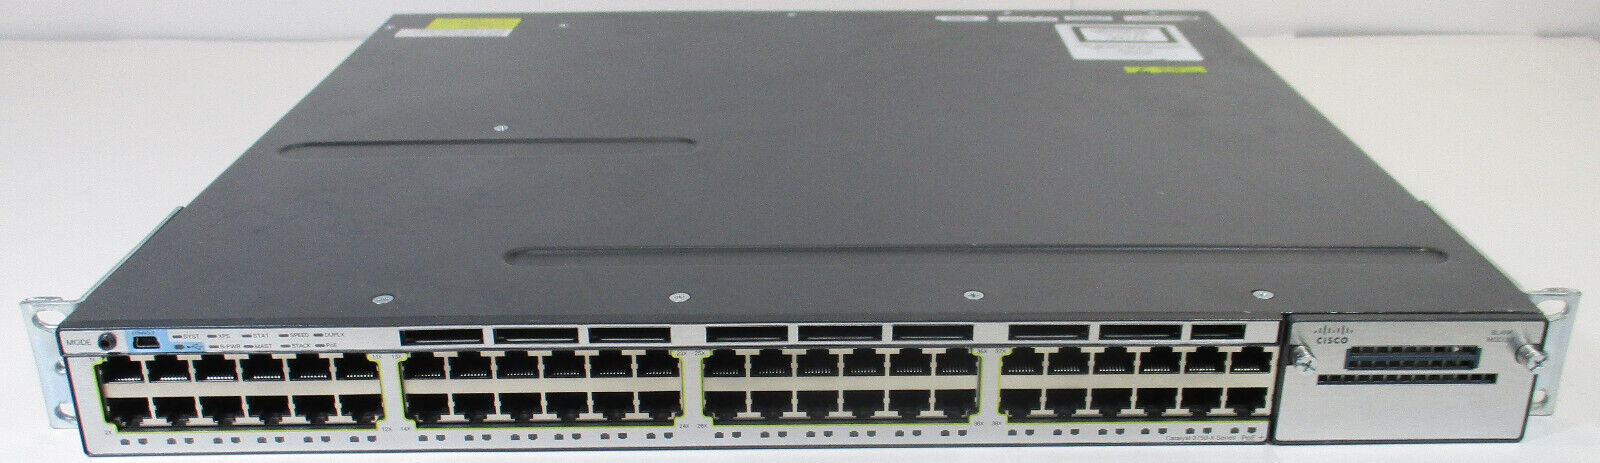 Cisco Catalyst WS-C3750X-48P-S Poe+ Network Switch Single 750W Power